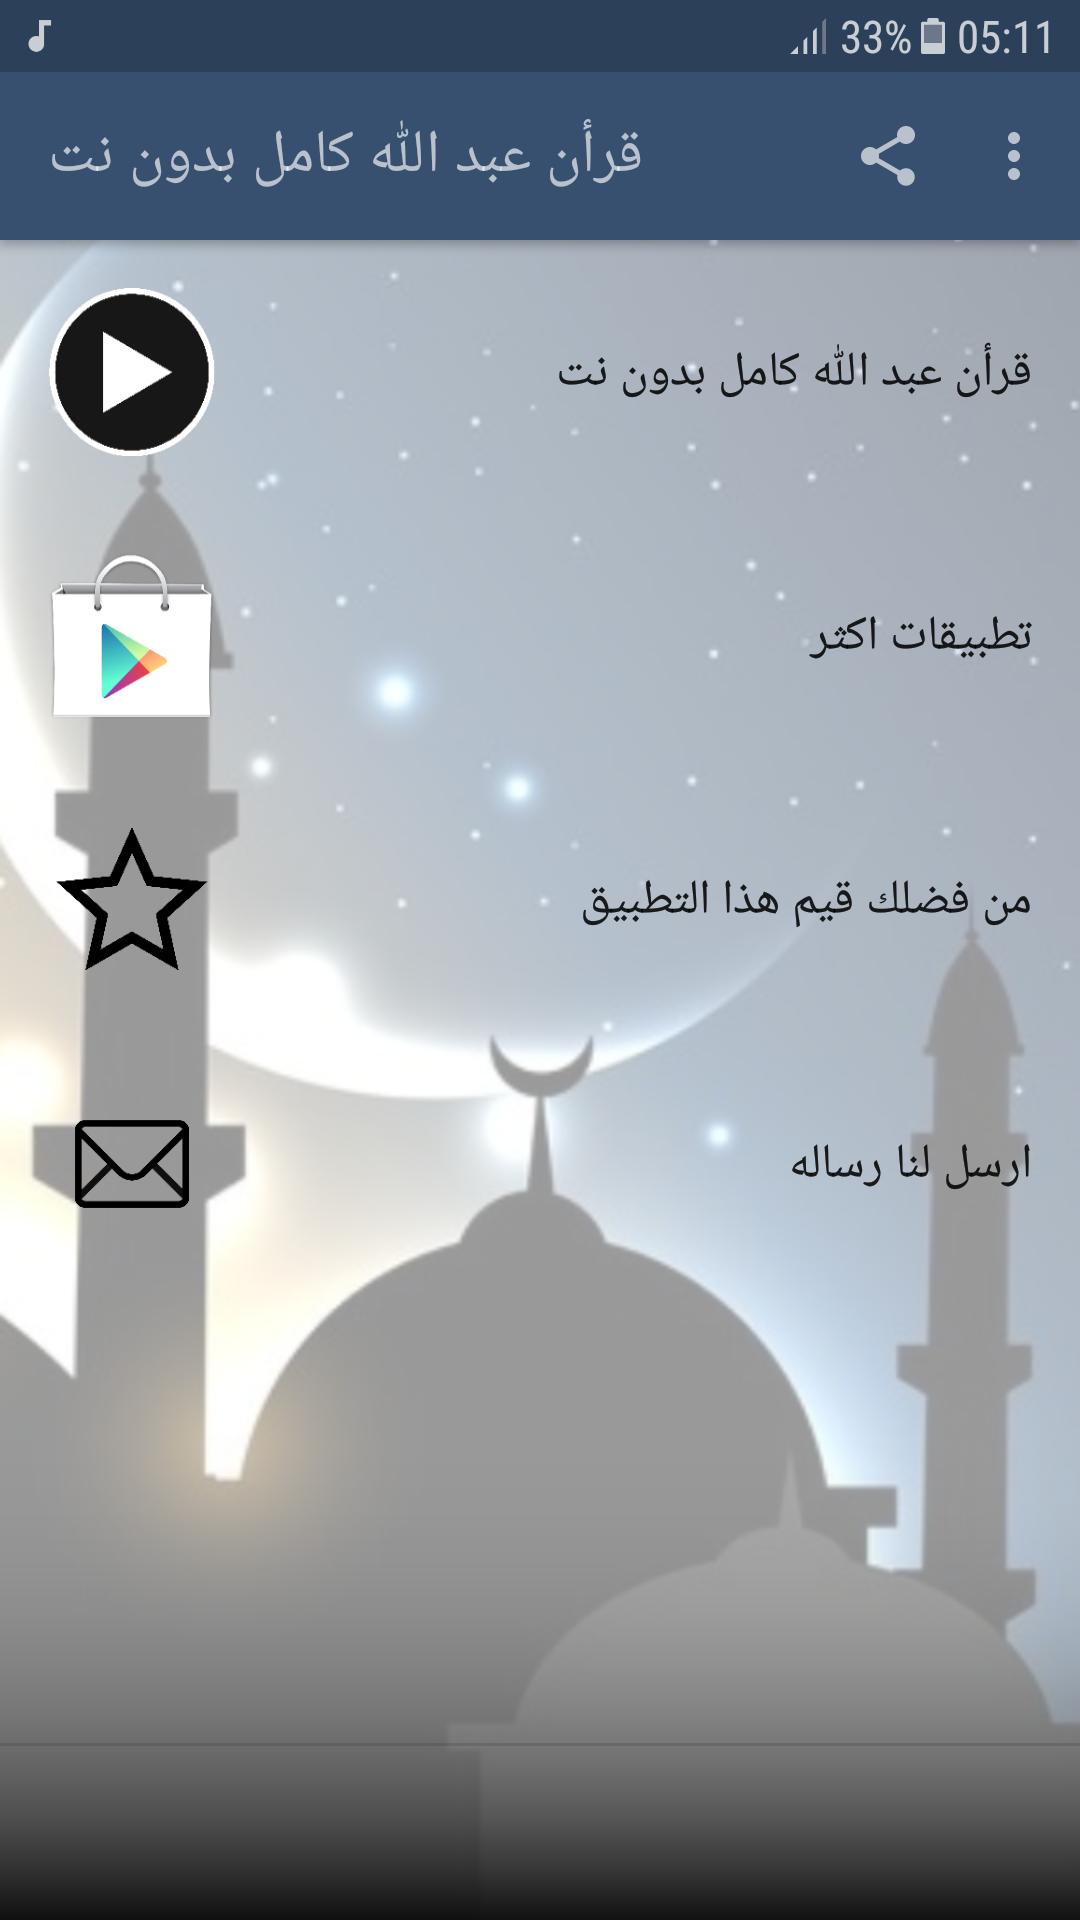 الشيخ عبد الله كامل بدون نت قرأن الكريم كاملا For Android Apk